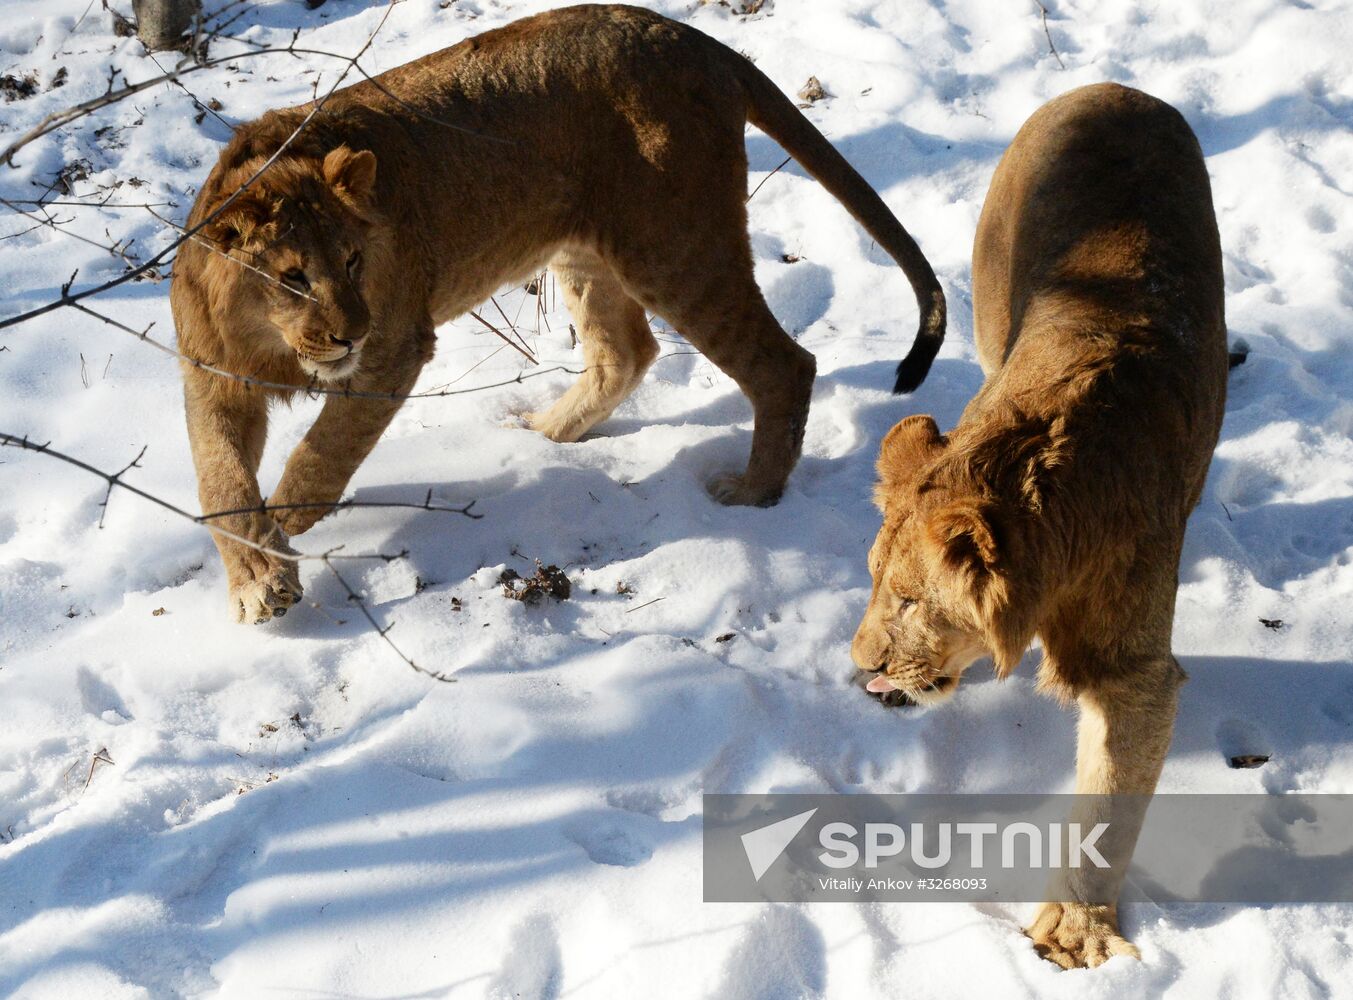 New arrivals in Primorye Safari Park